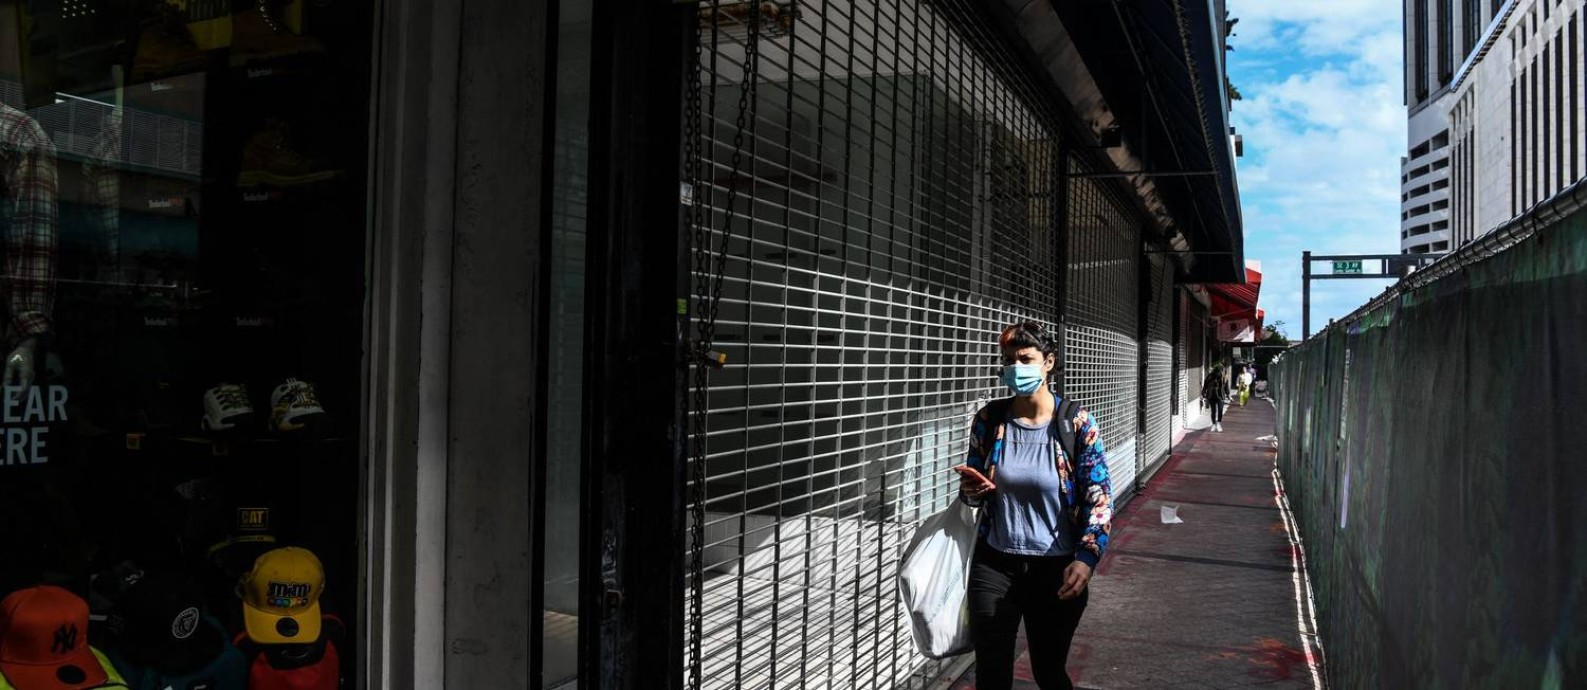 Avanço da Ômicron afeta pequenos negócios, que já registram perda de 30% no faturamento Foto: CHANDAN KHANNA / AFP